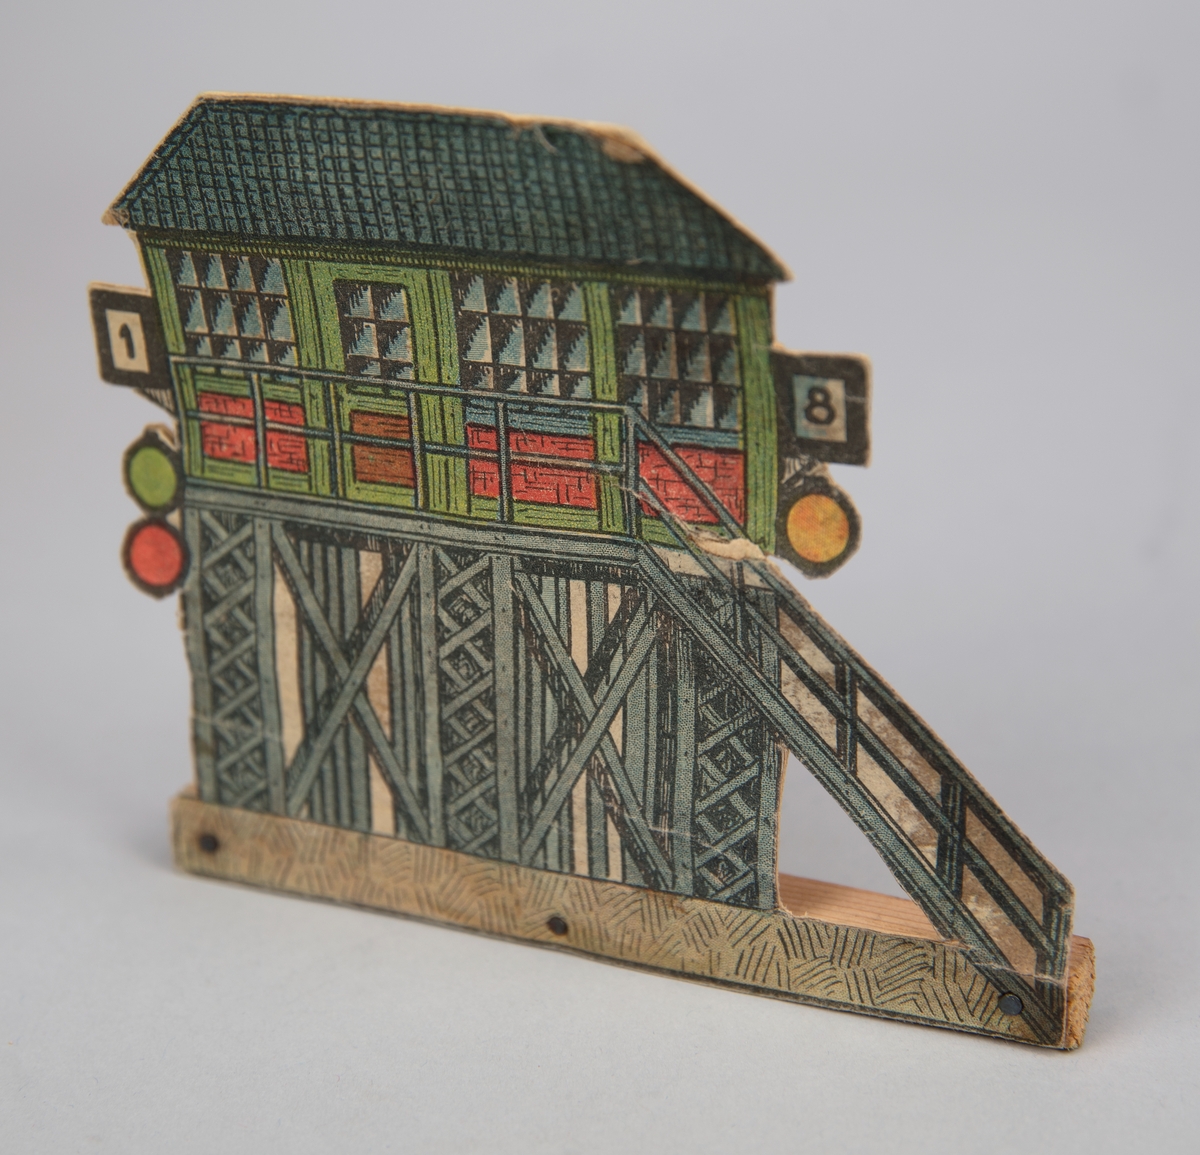 Pappersmodell föreställande ställverkbyggnad i grönt, grått och rött. Pappersmodellen fäst i smal träpinne med tre spikar.